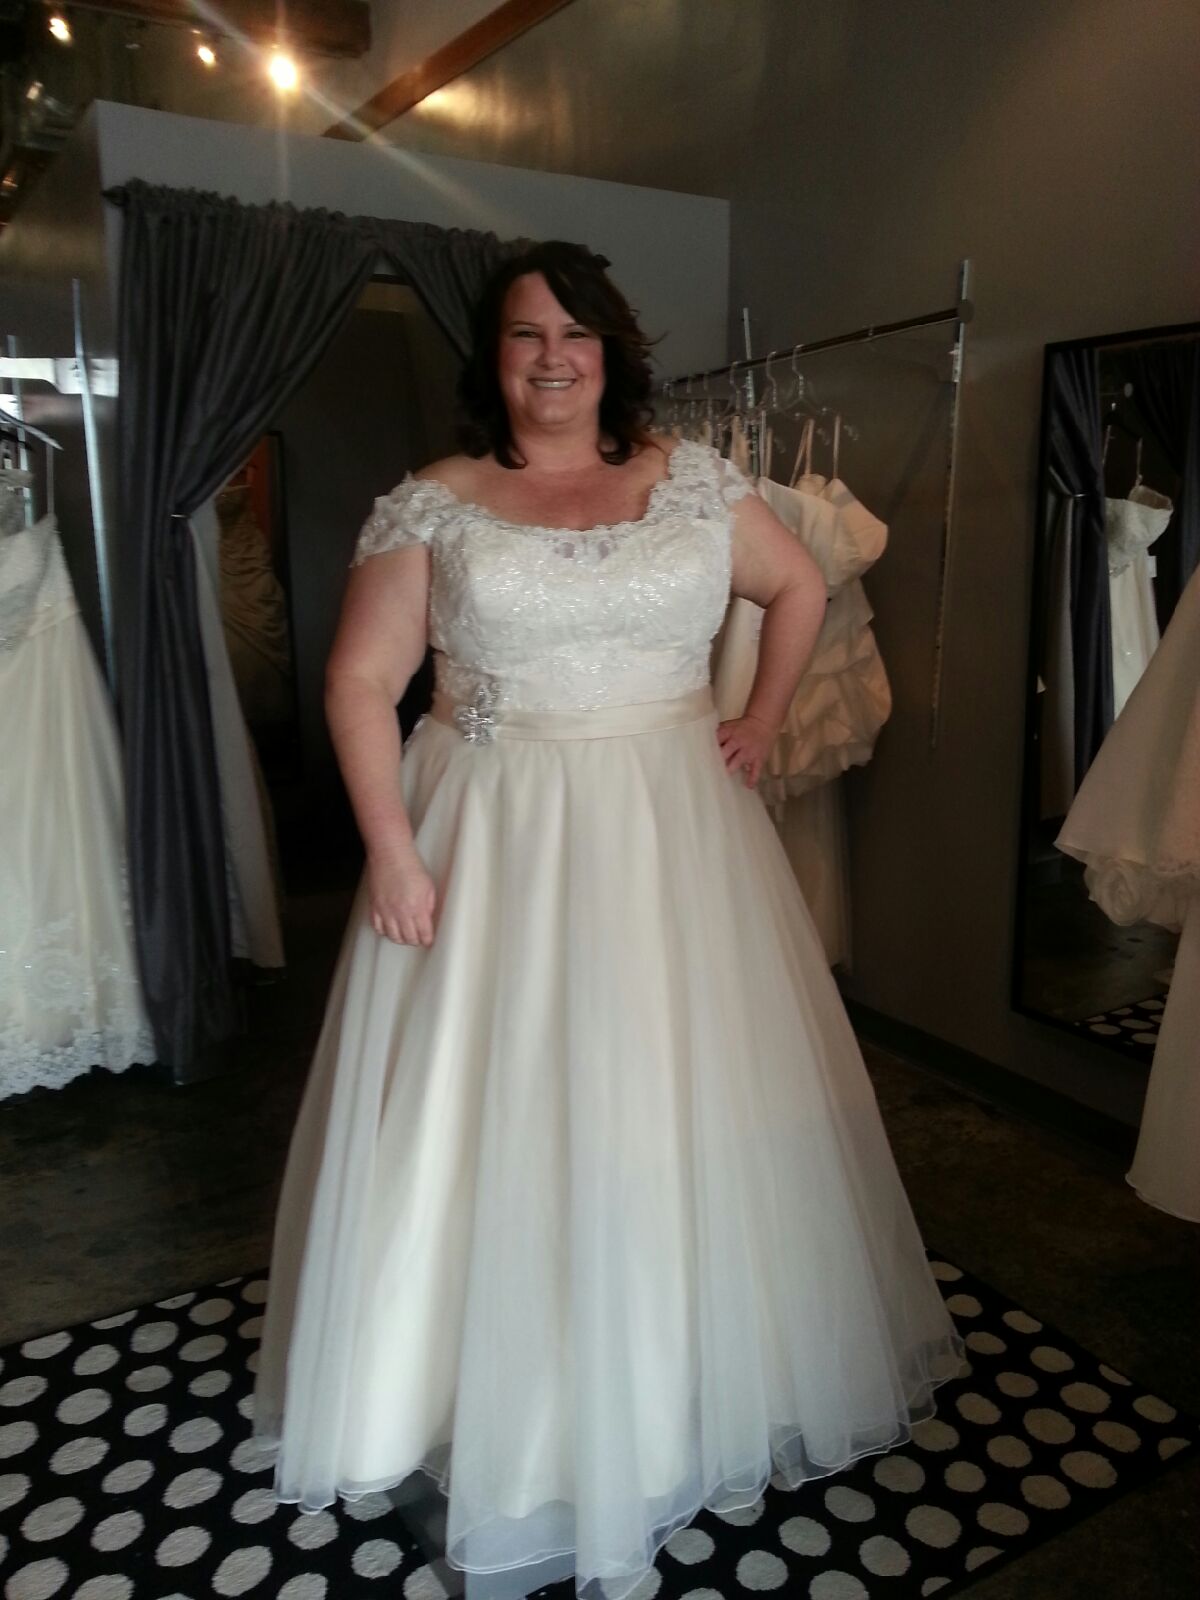 New Dress: Plus Size Wedding Dress with Straps